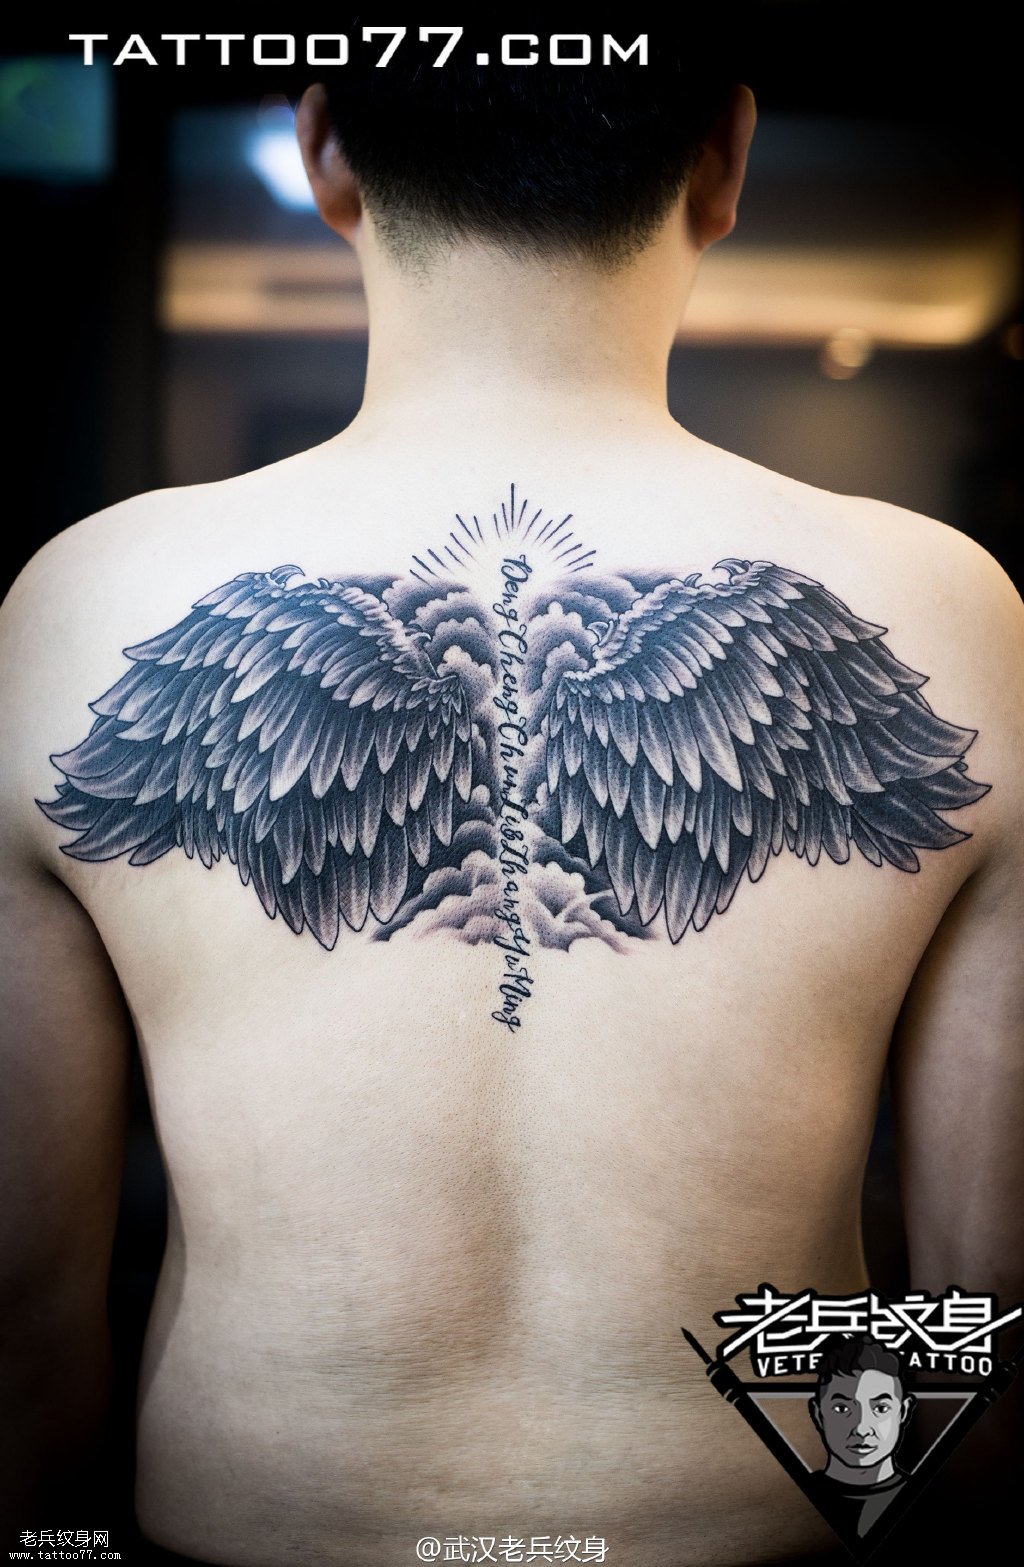 半背天使翅膀纹身图案作品